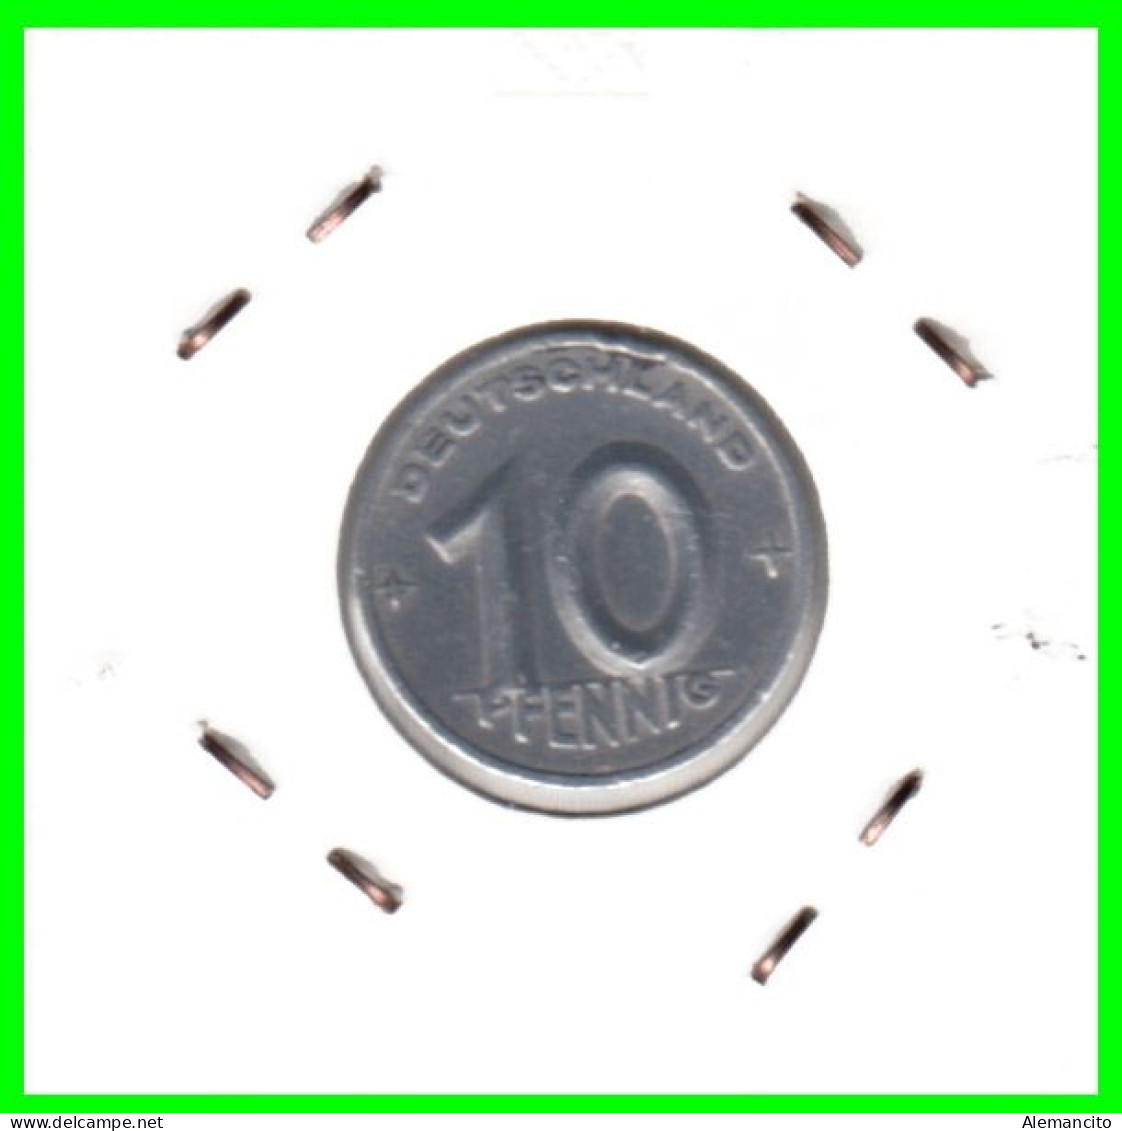 REPUBLICA DEMOCRATICA DE ALEMANIA ( DDR )  MONEDA DE 10 PFENNING AÑO - 1950 - CECA - A - MONEDA DE ALUMINIO CIRCULADA - 10 Pfennig